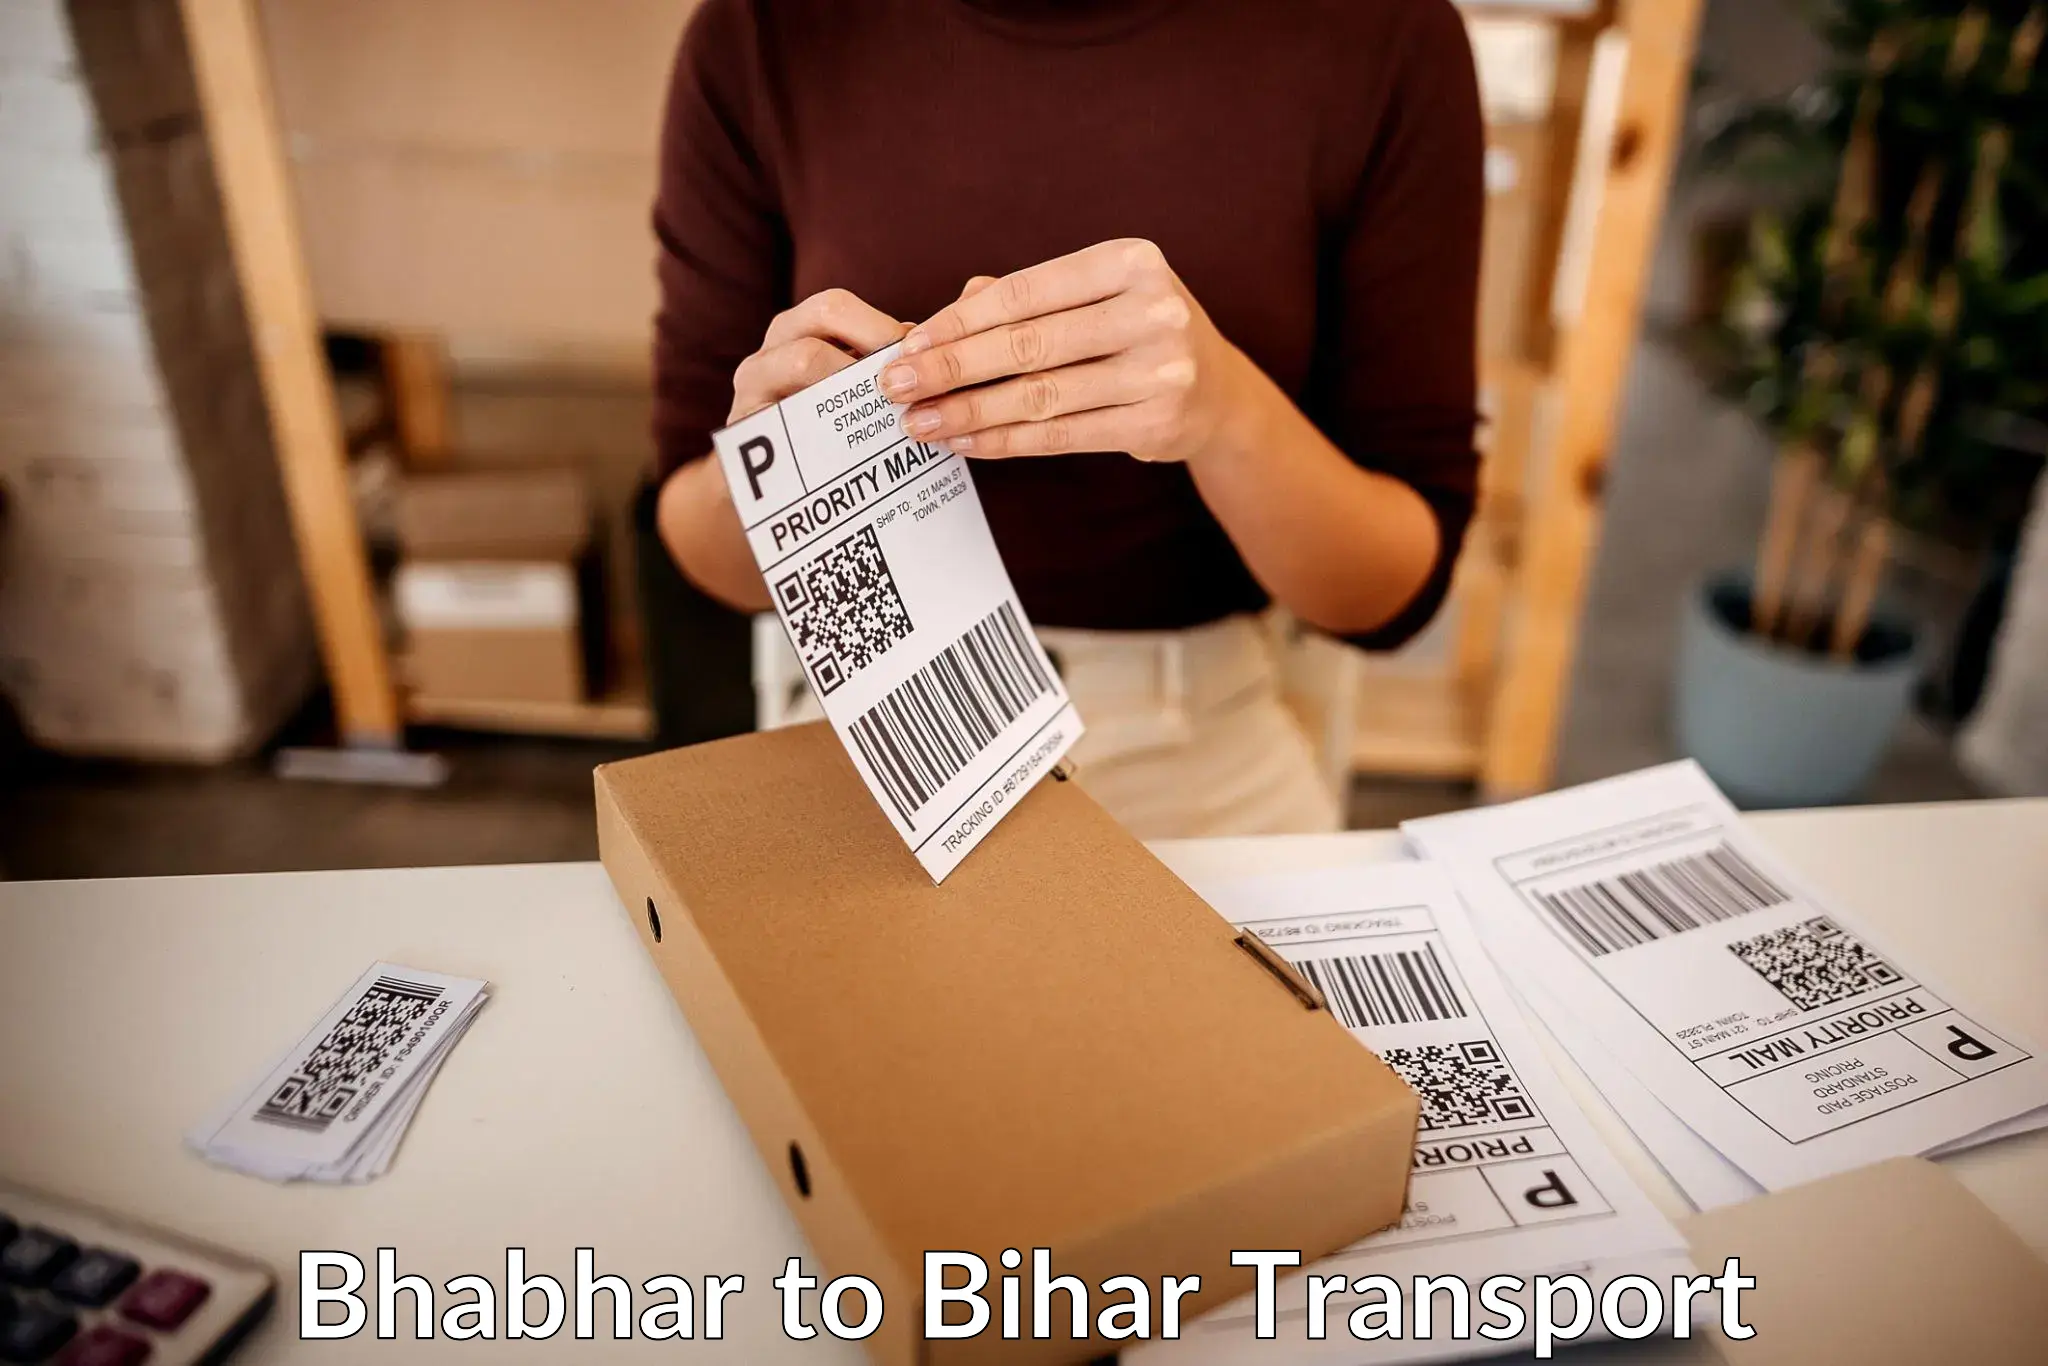 Daily transport service Bhabhar to Lakhisarai